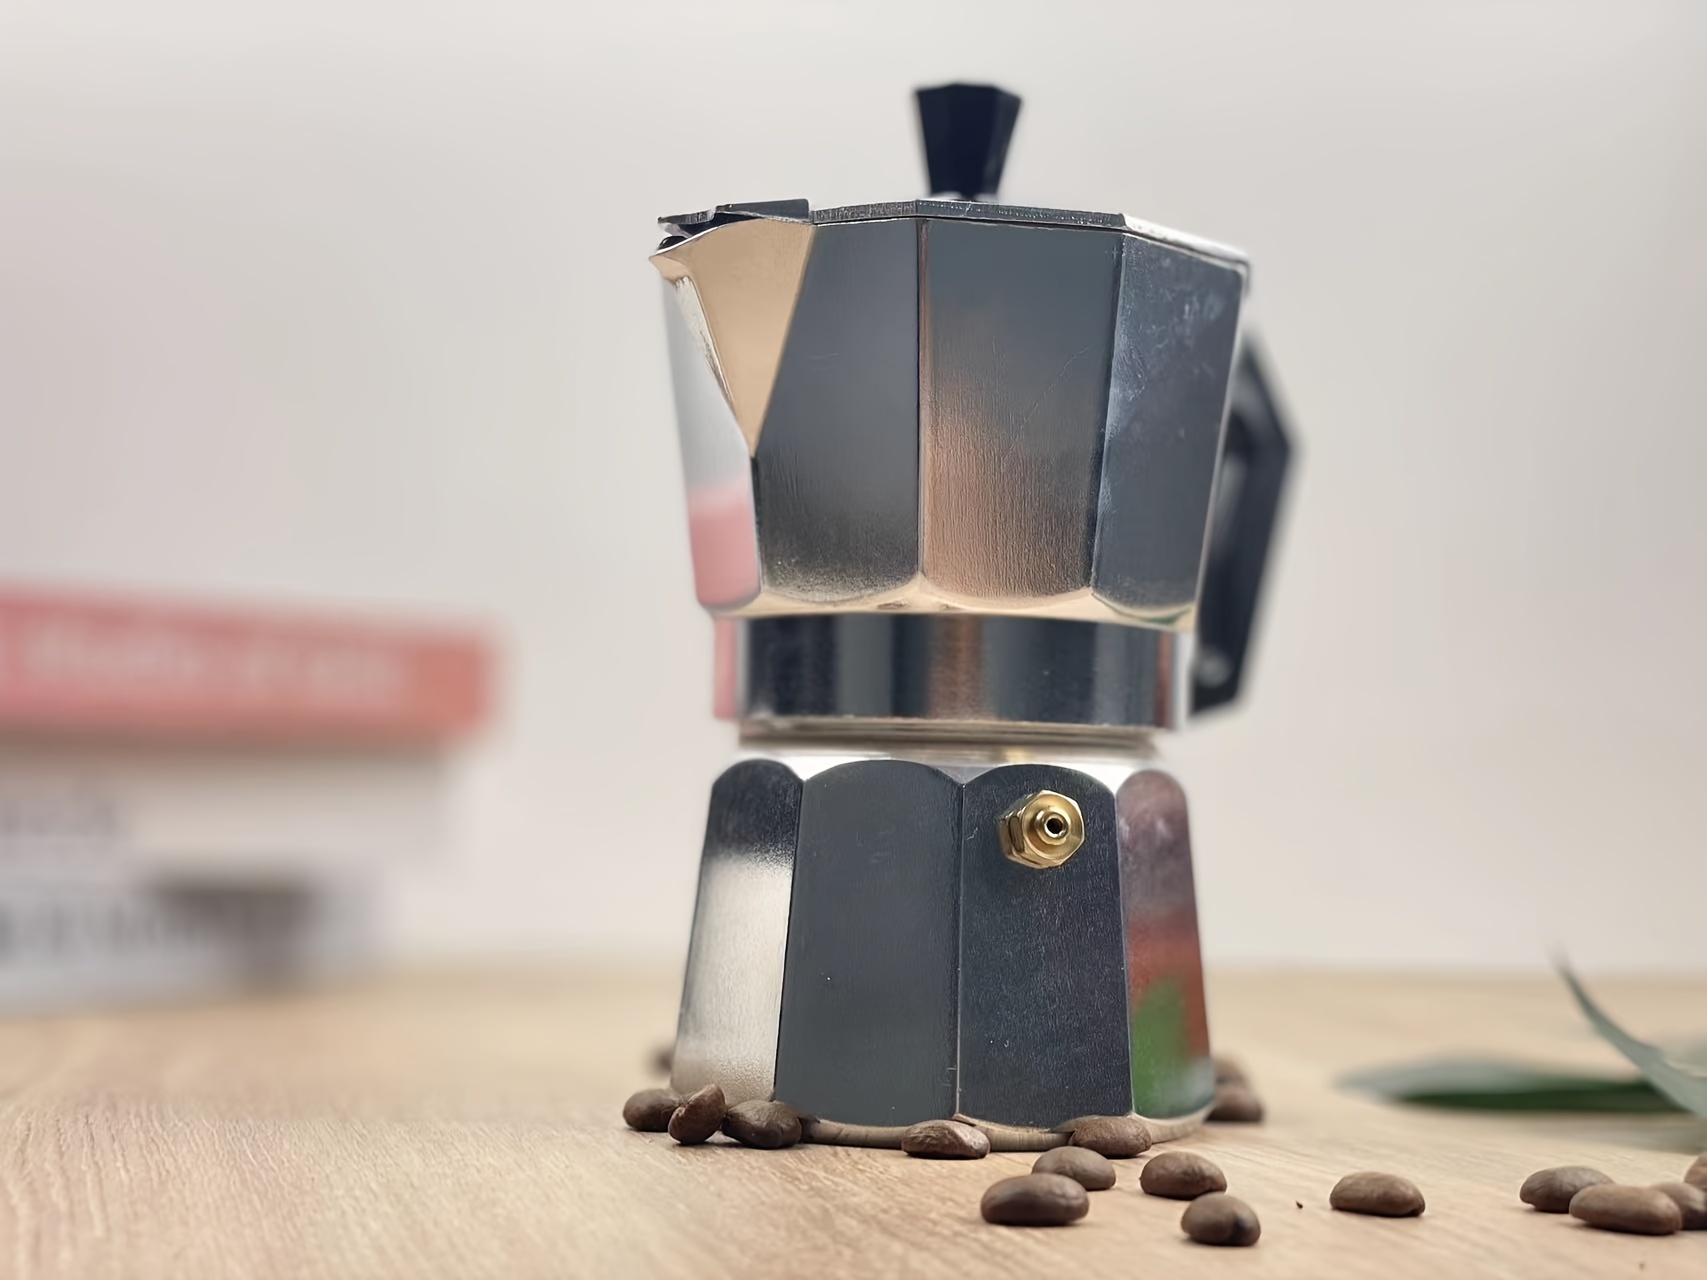 Coffee Maker Aluminum Mocha Espresso Percolator Pot – TheWokeNest